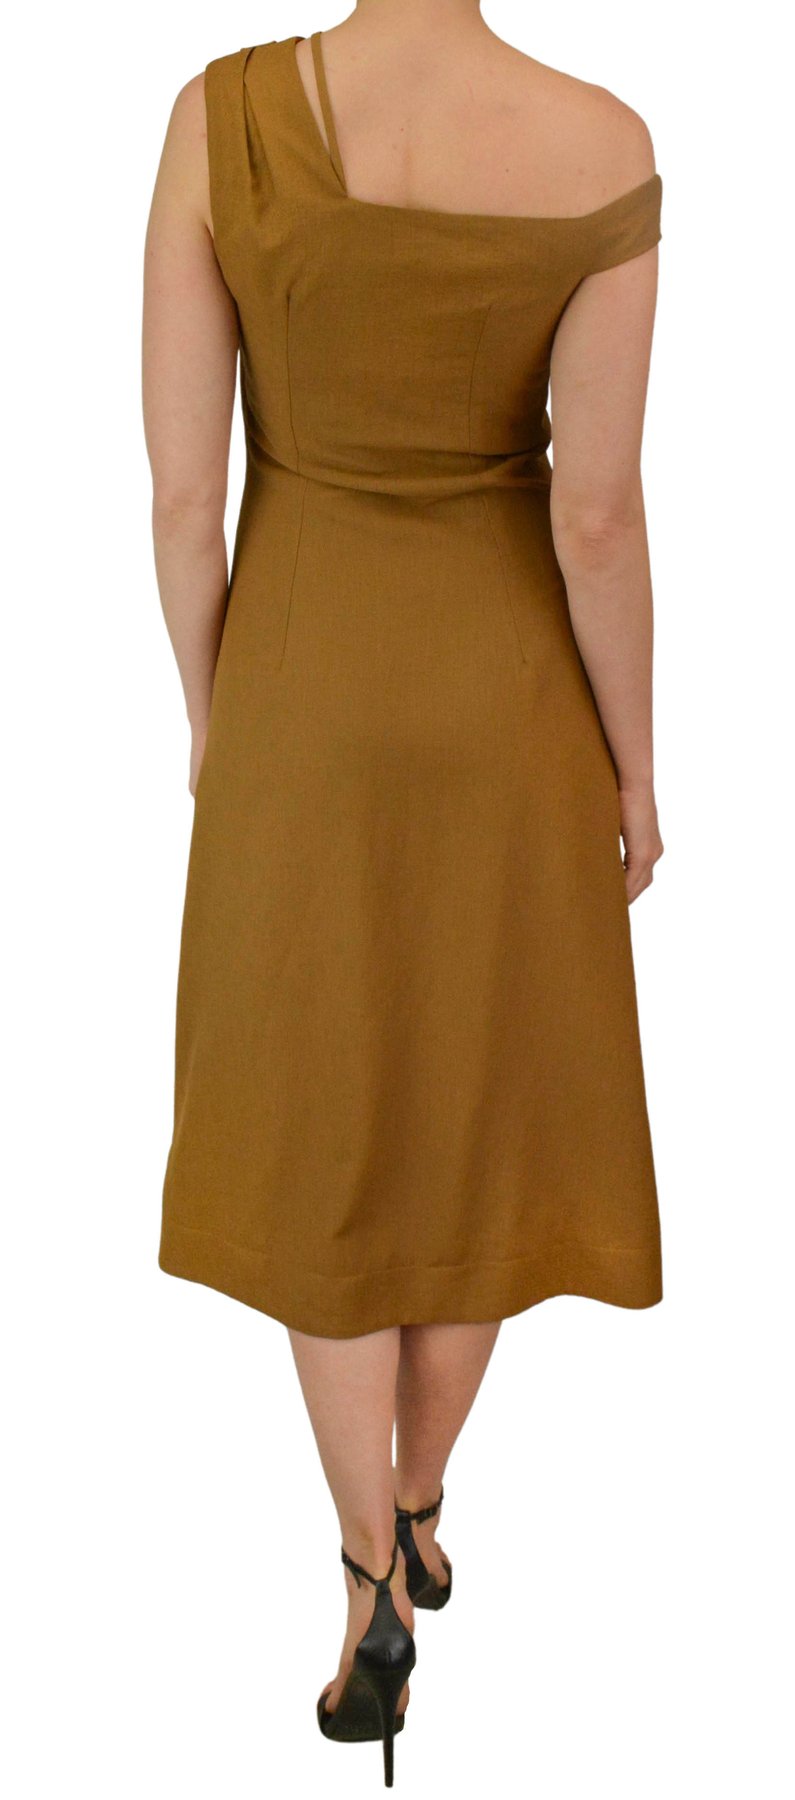 Nomia Asymmetric Off Shoulder Dress Size 4